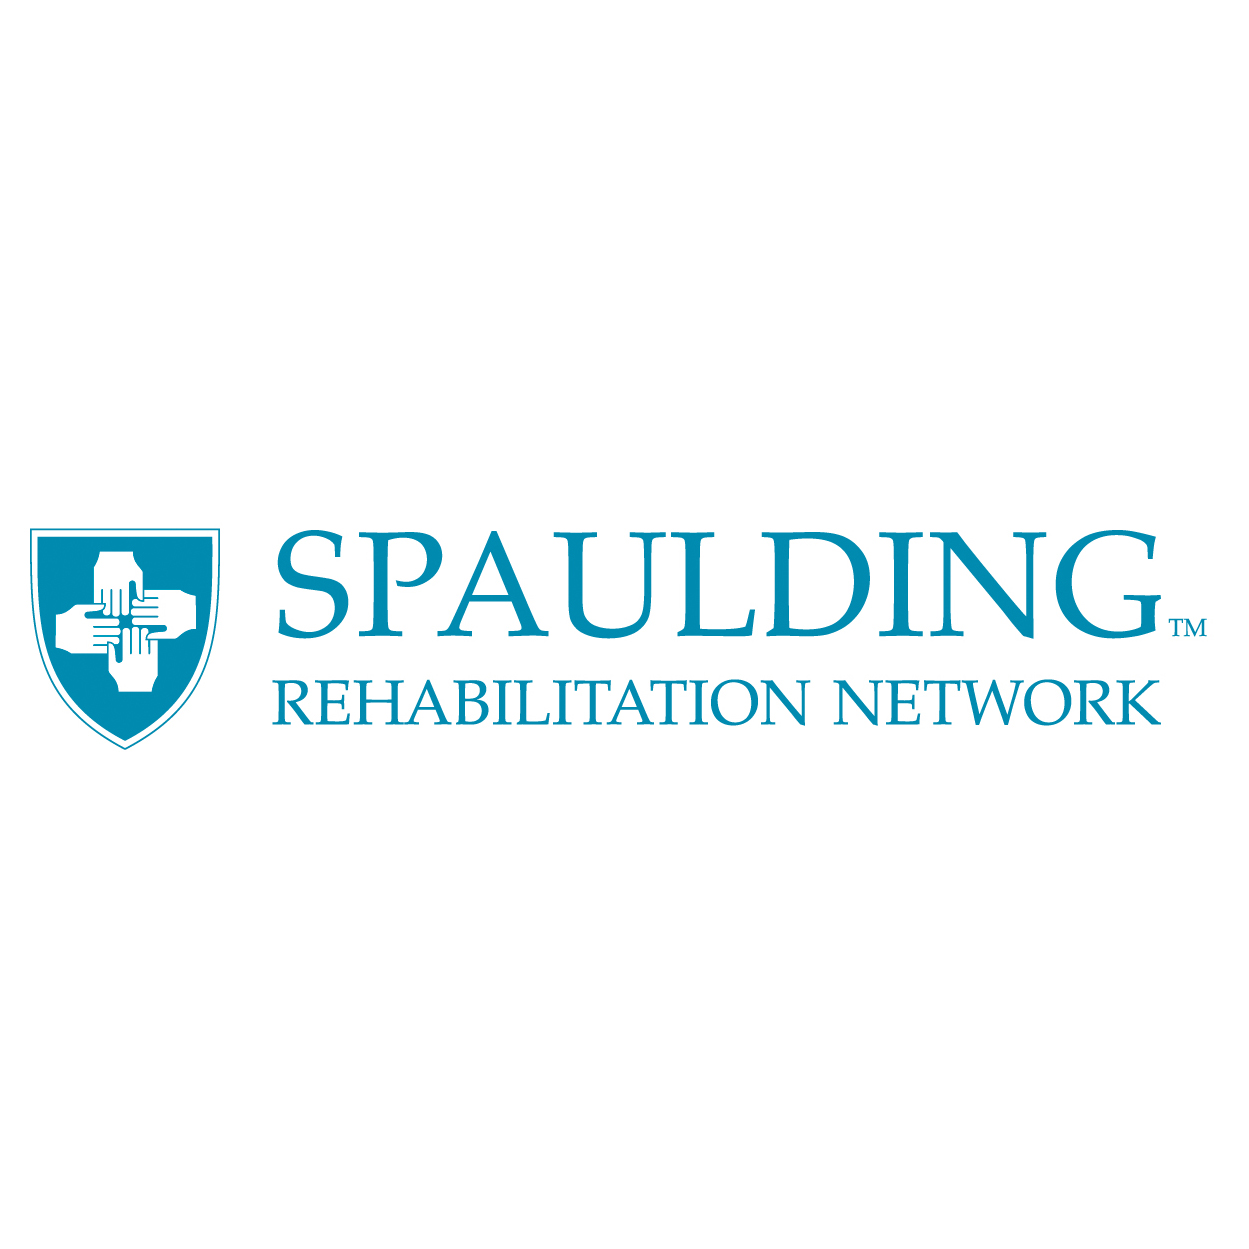 Red de rehabilitación de Spaulding